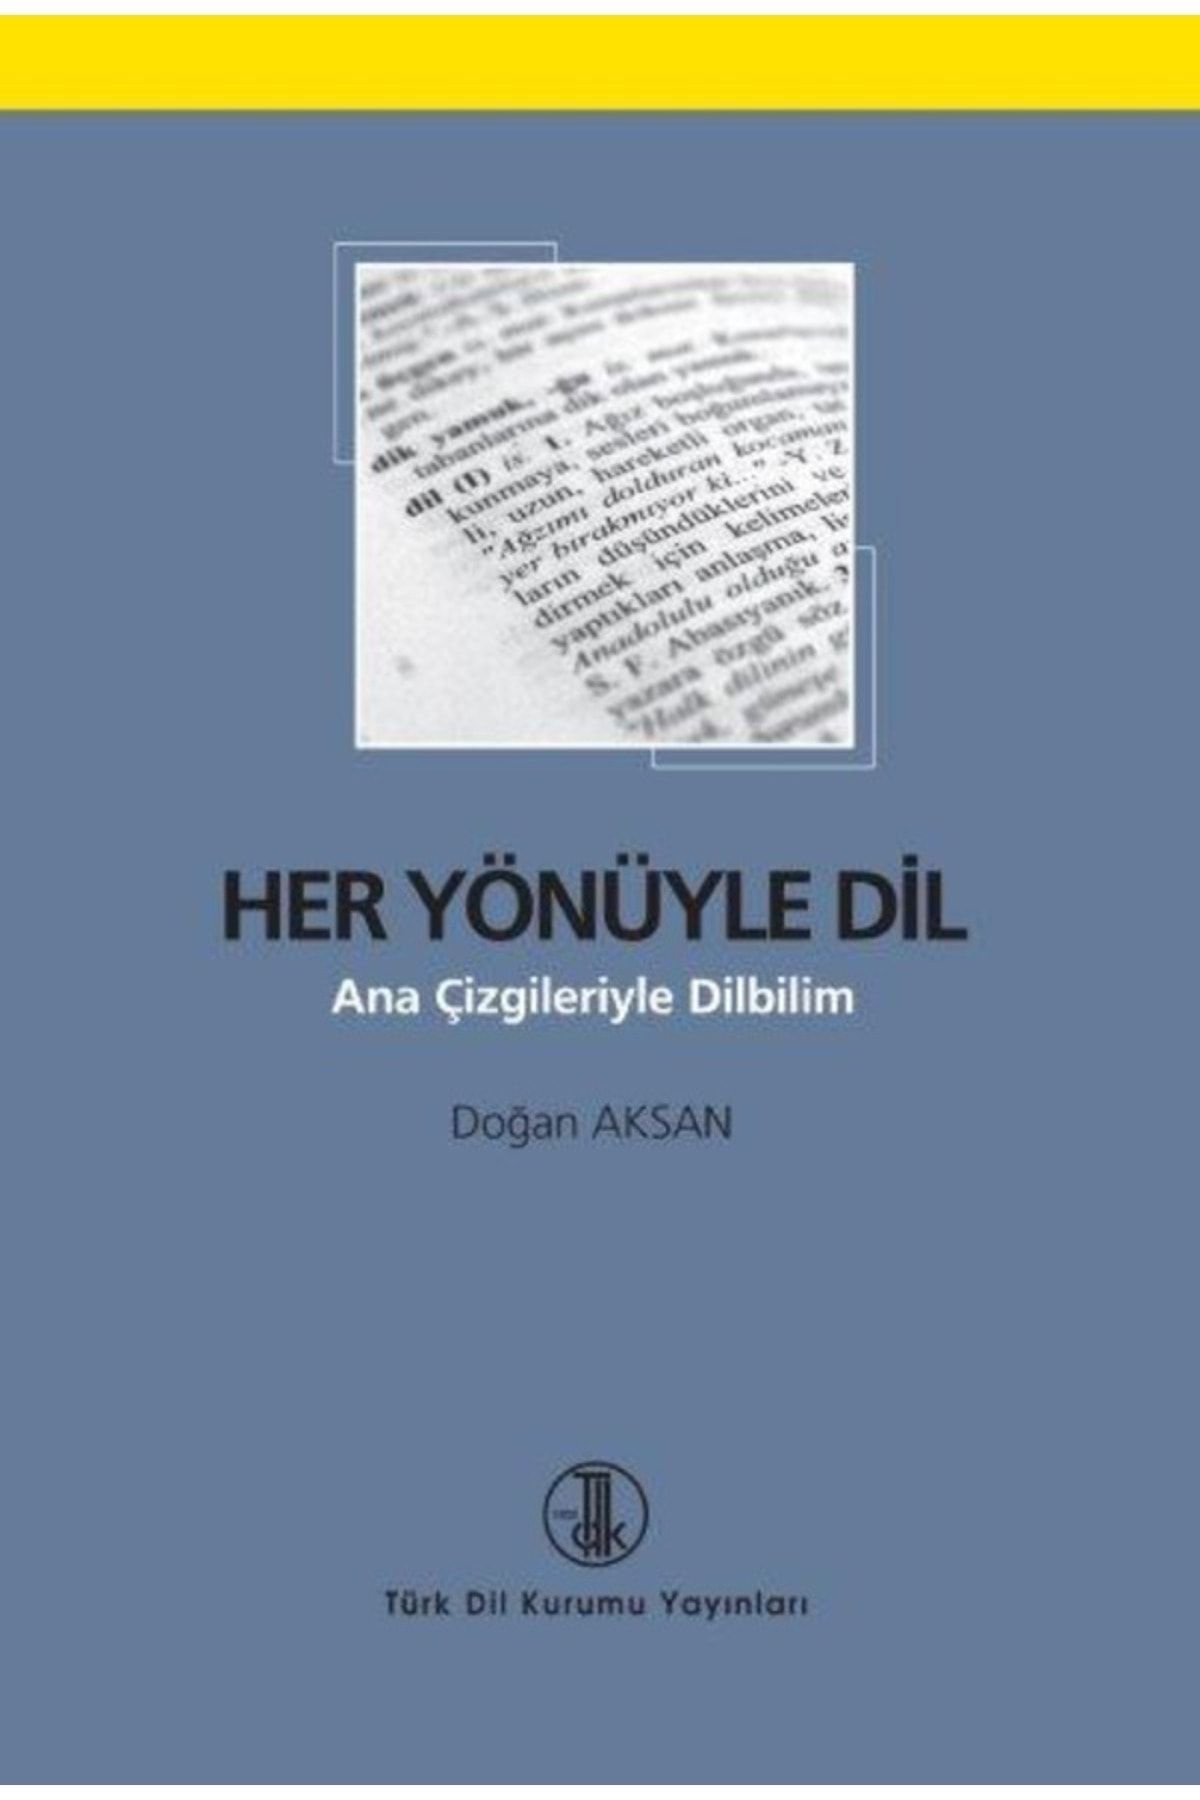 Türk Dil Kurumu Yayınları Her Yönüyle Dil, 2020 Türk Dil Kurumu Yayınları